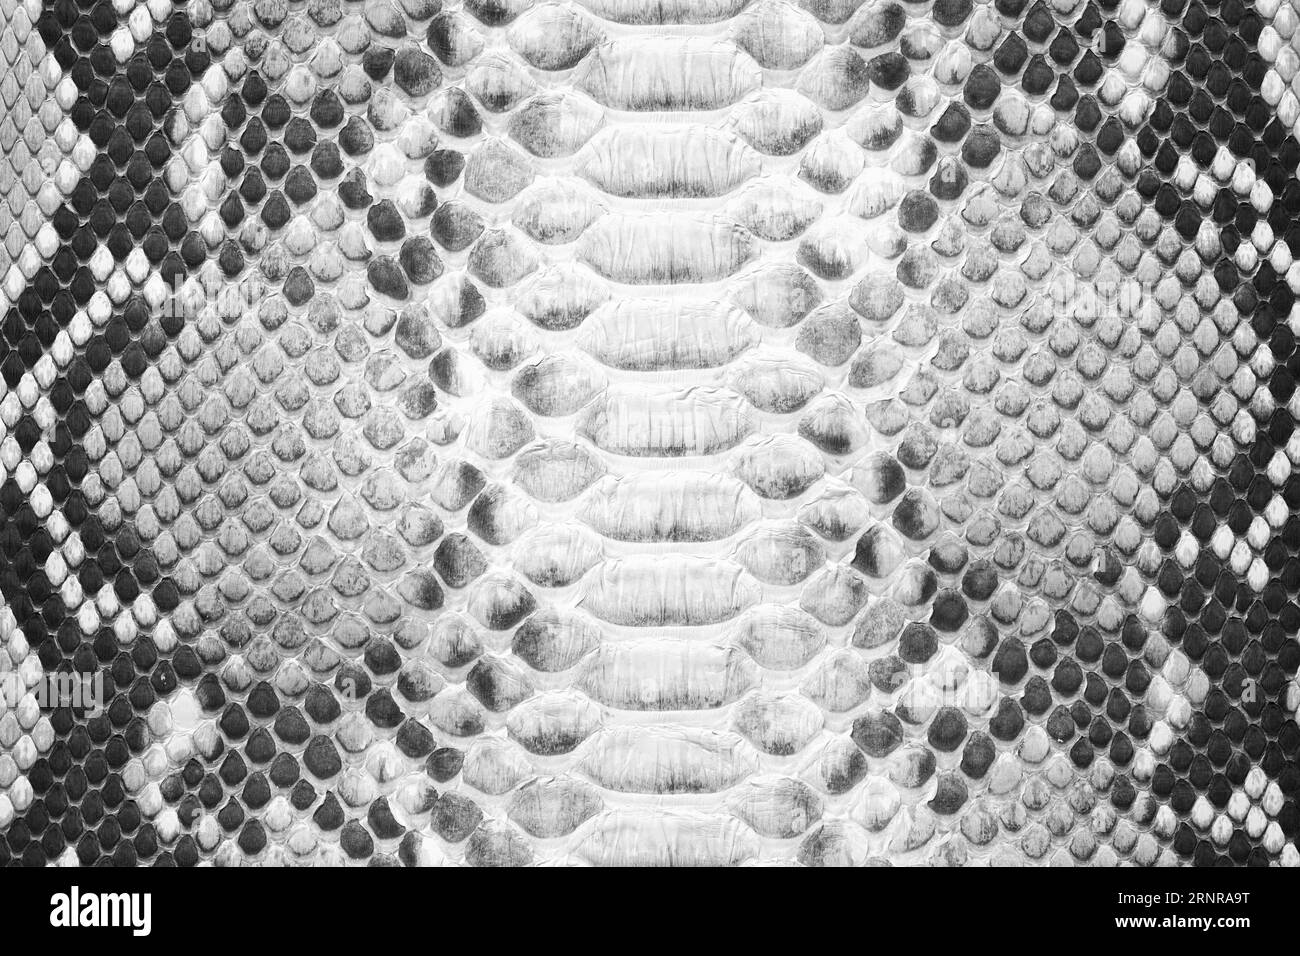 textura de piel de serpiente blanca y negra, fondo de cuero Foto de stock